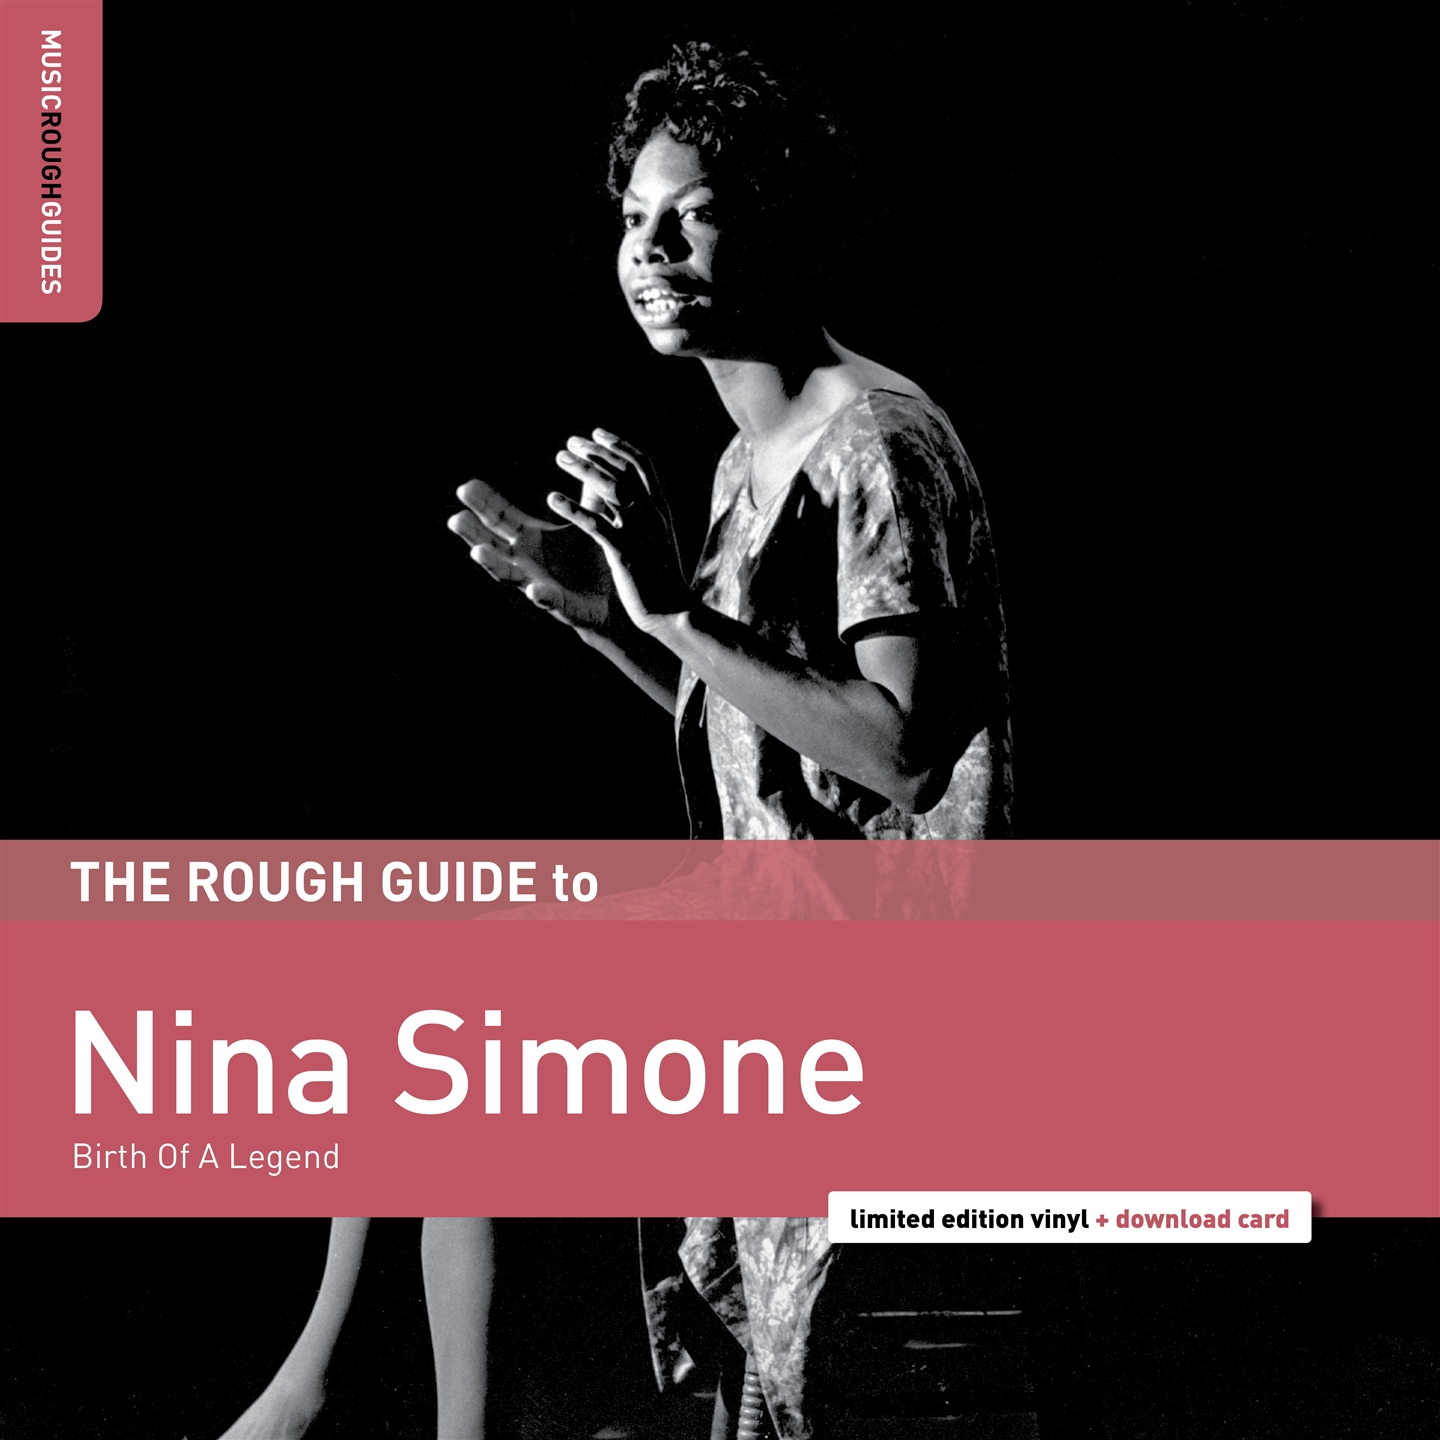 THE ROUGH GUIDE TO NINA SIMONE [LP]